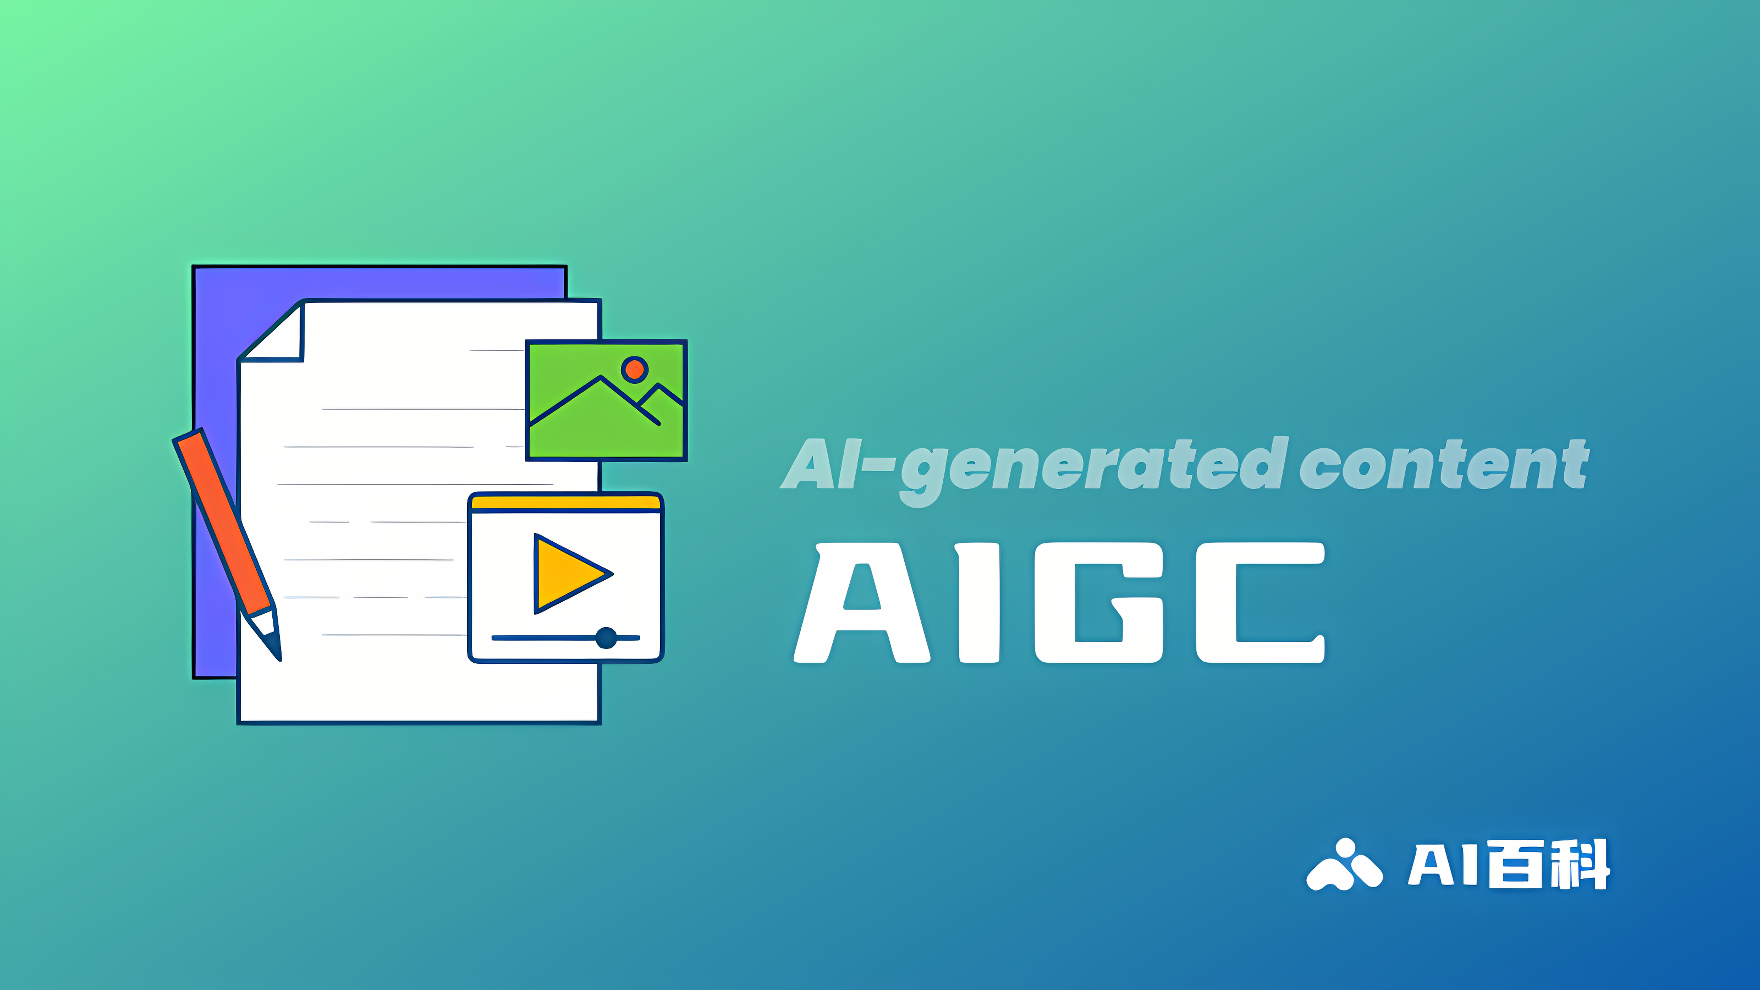 这张图片展示了标有“AI-generated content AIGC”字样的图标，包括文档、图片和视频符号，背景是渐变的绿蓝色。